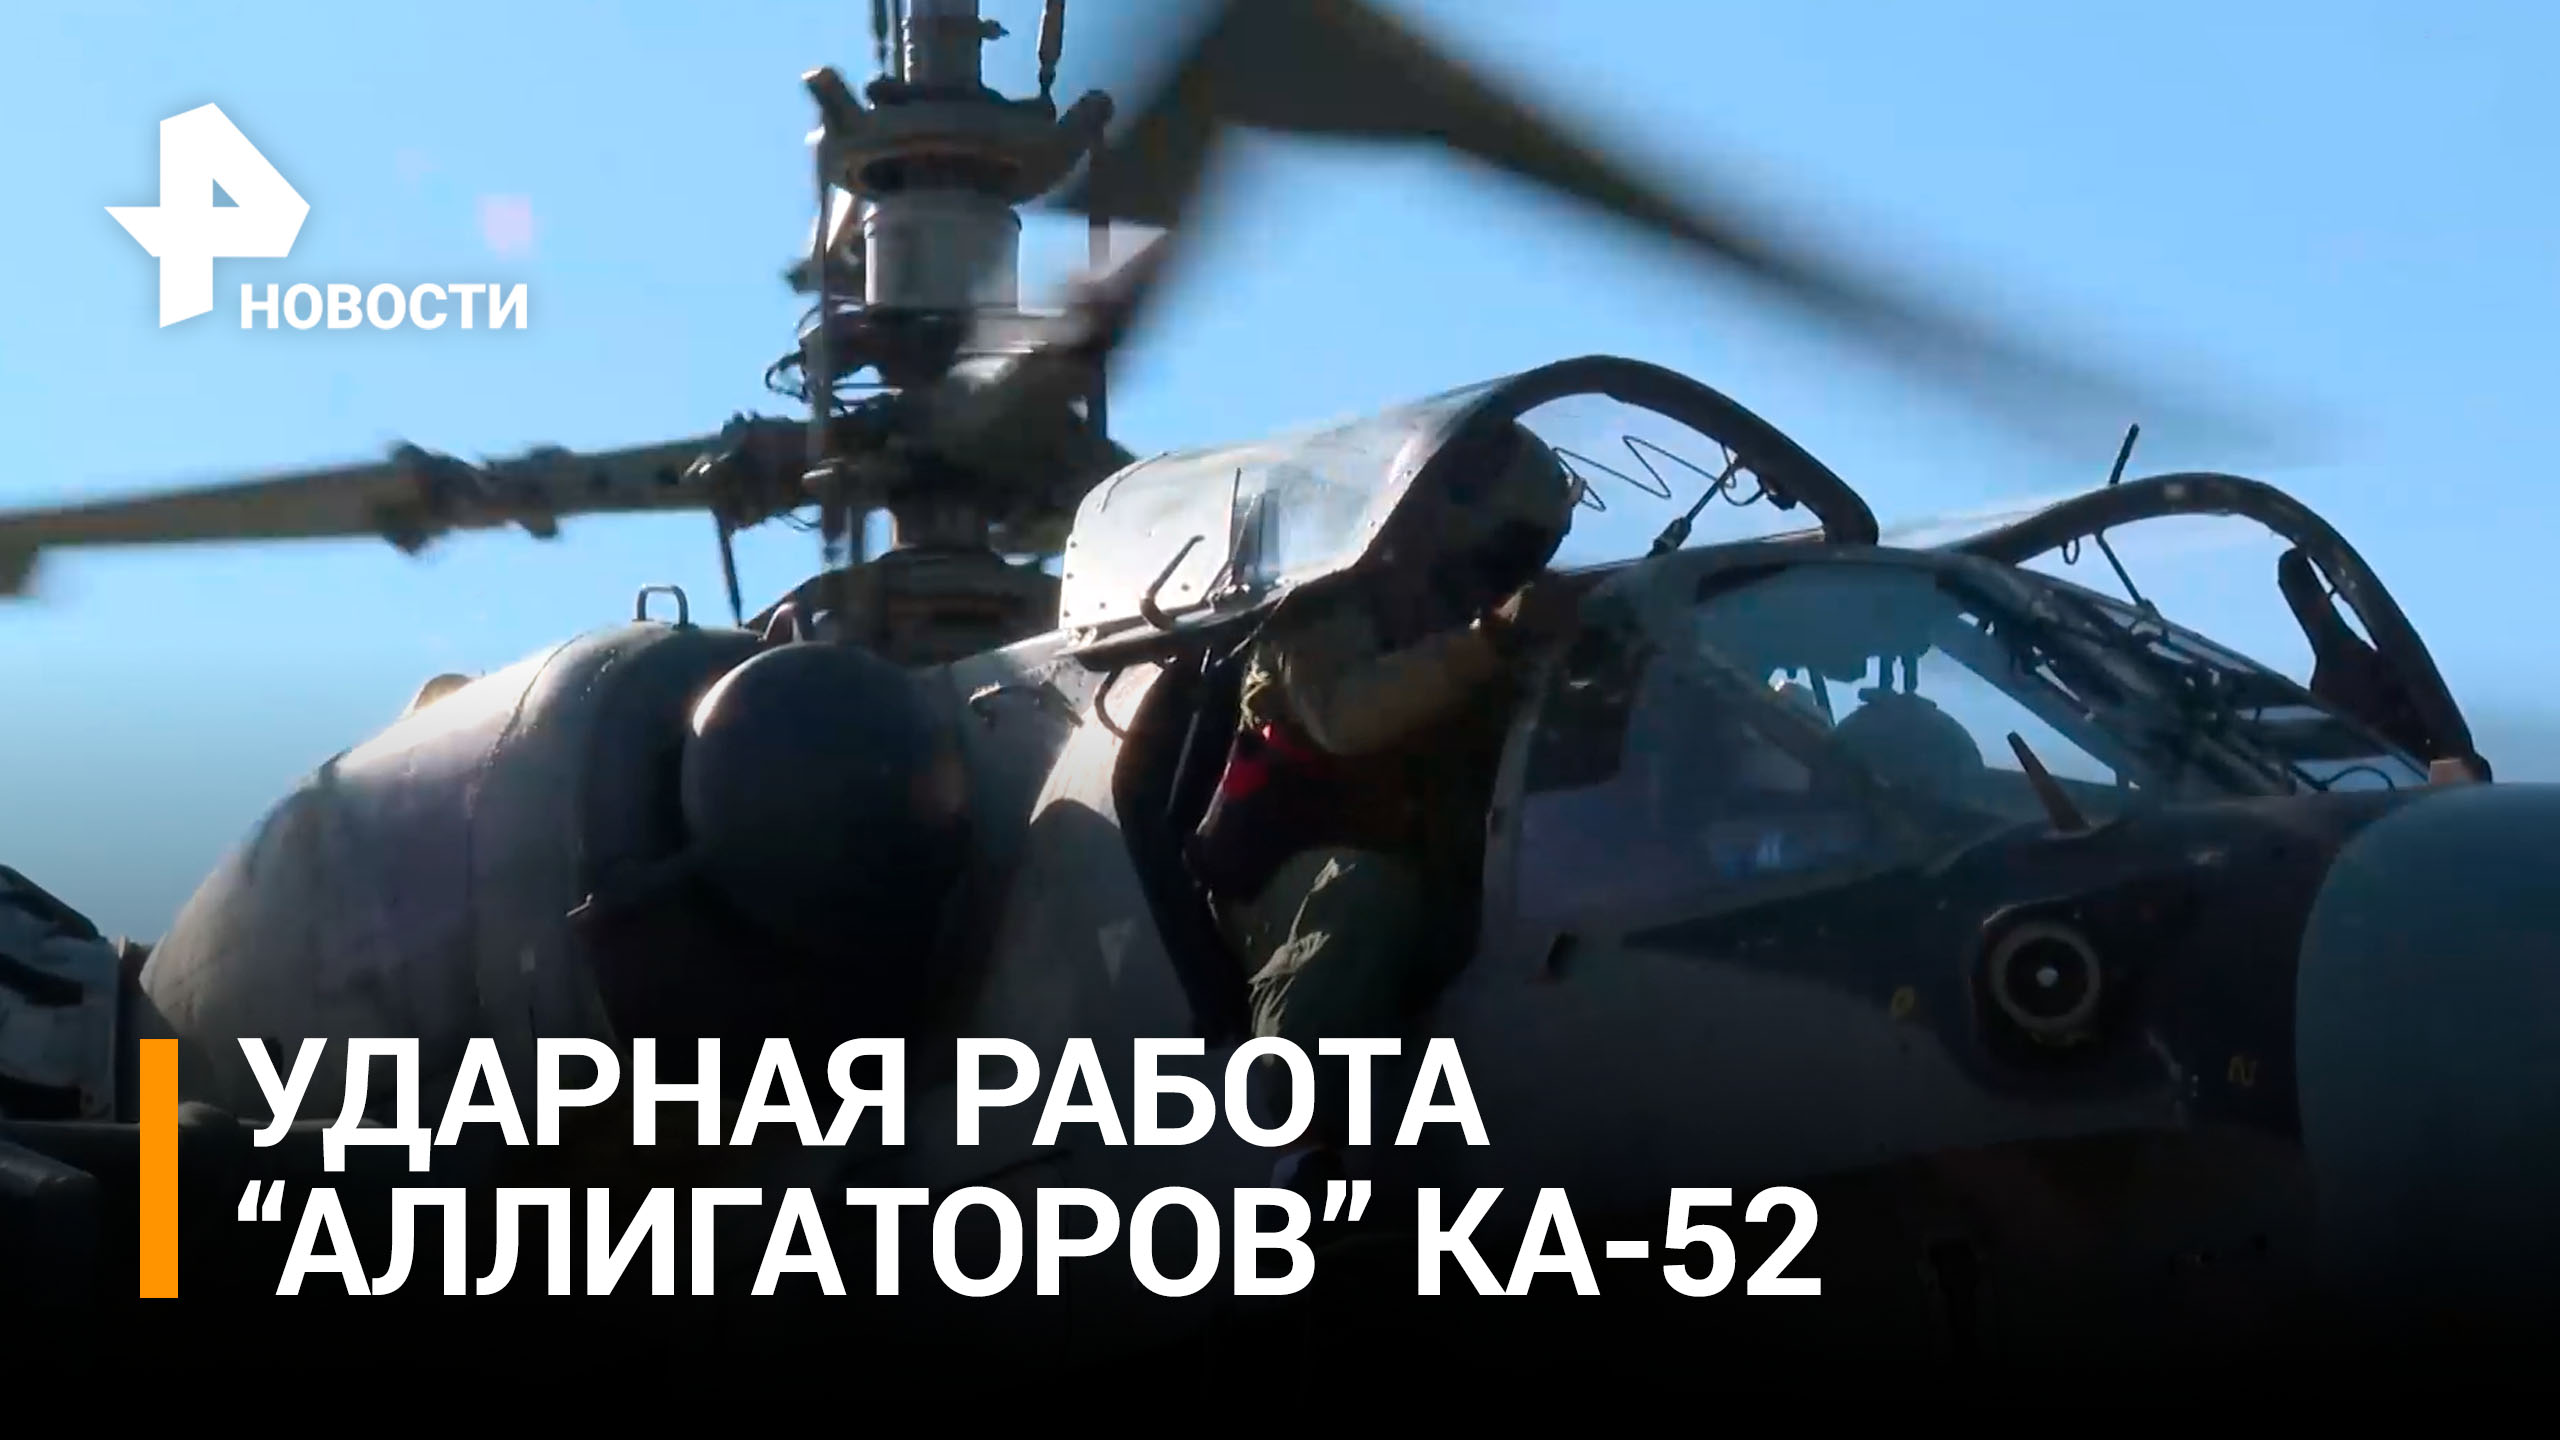 Ка-52 уничтожили опорные пункты и технику ВСУ / РЕН Новости